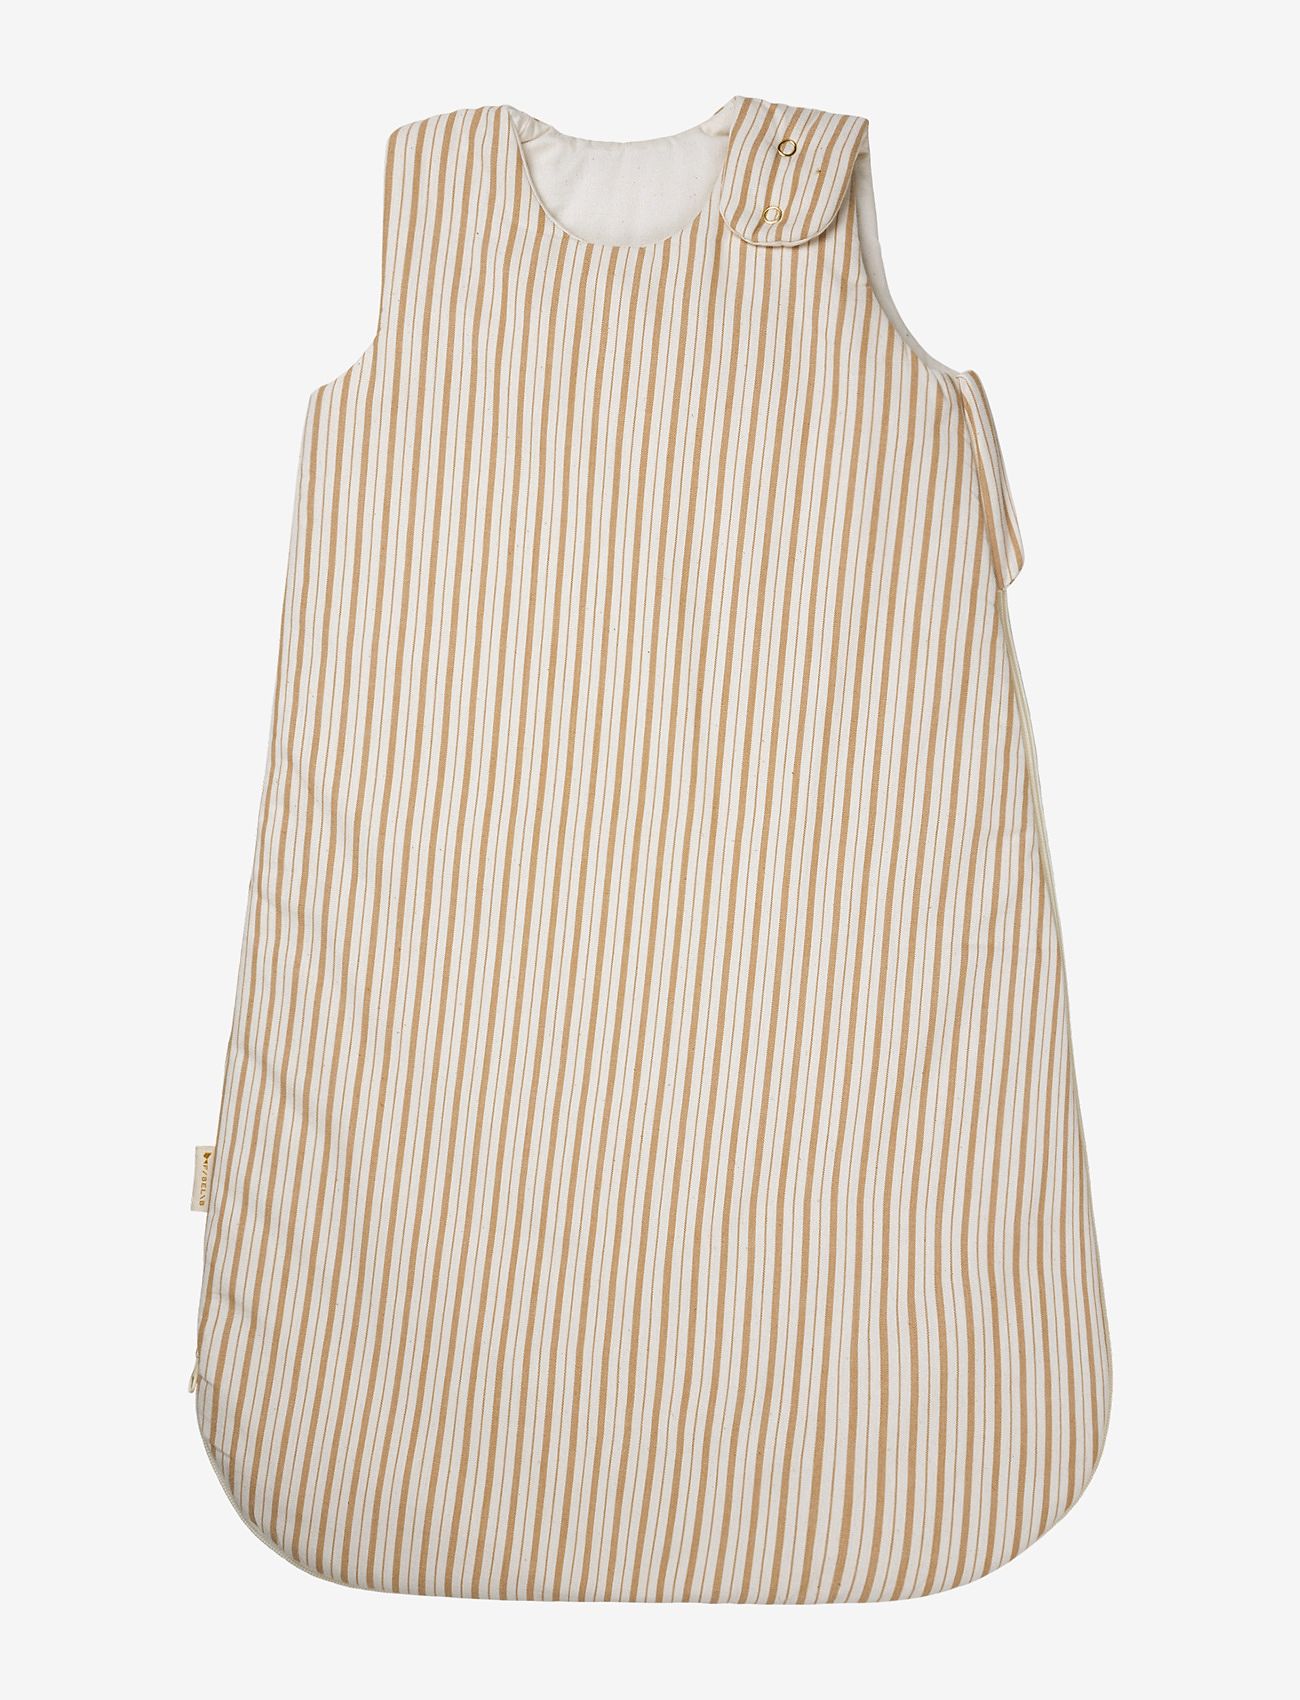 Fabelab - Sleeping bag - Caramel Stripes 6-18M - kinder - natural - 0